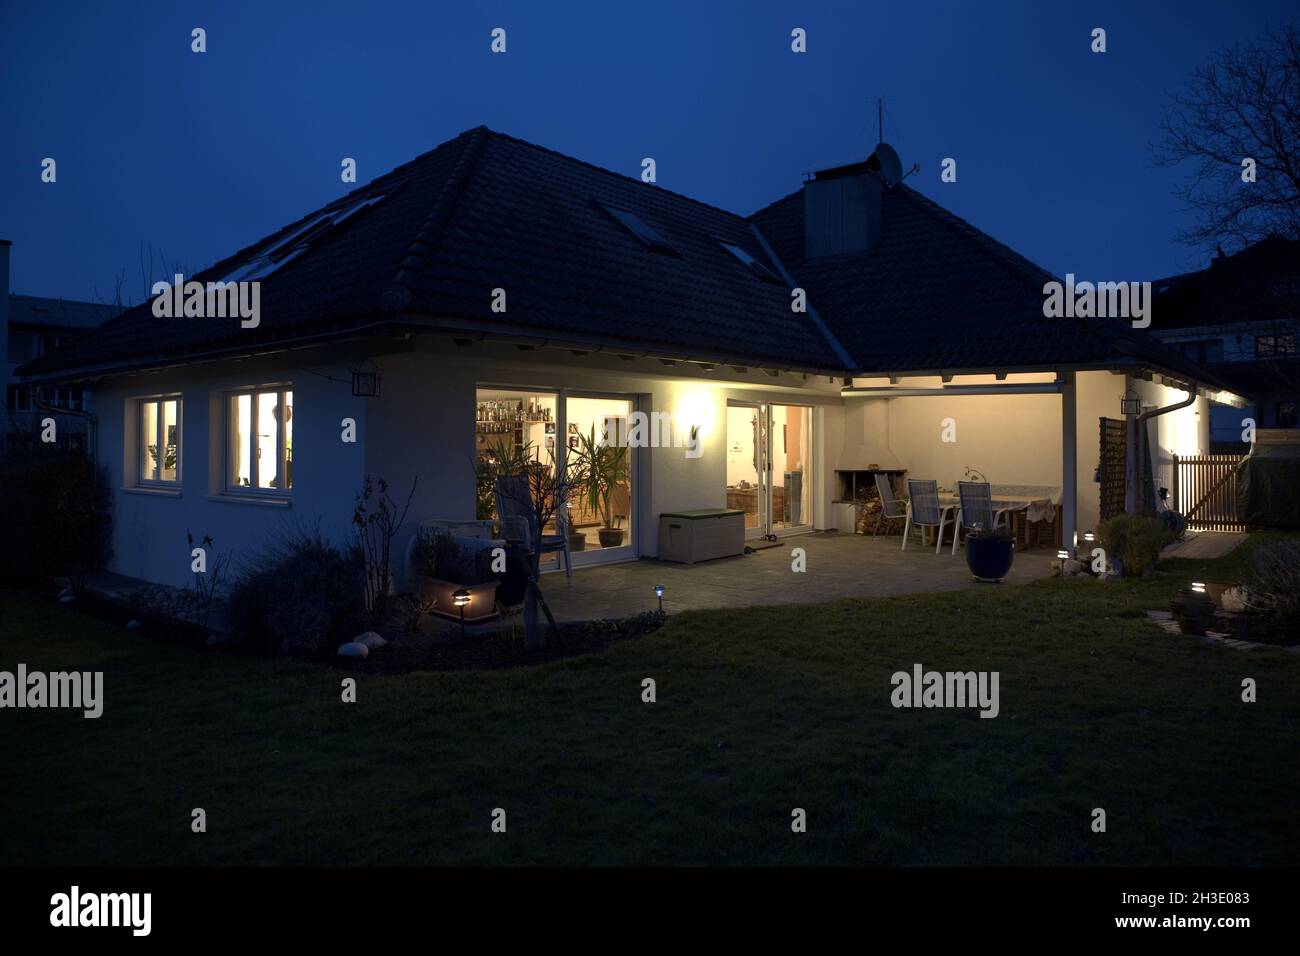 Single-family home illuminated at night, Austria Stock Photo